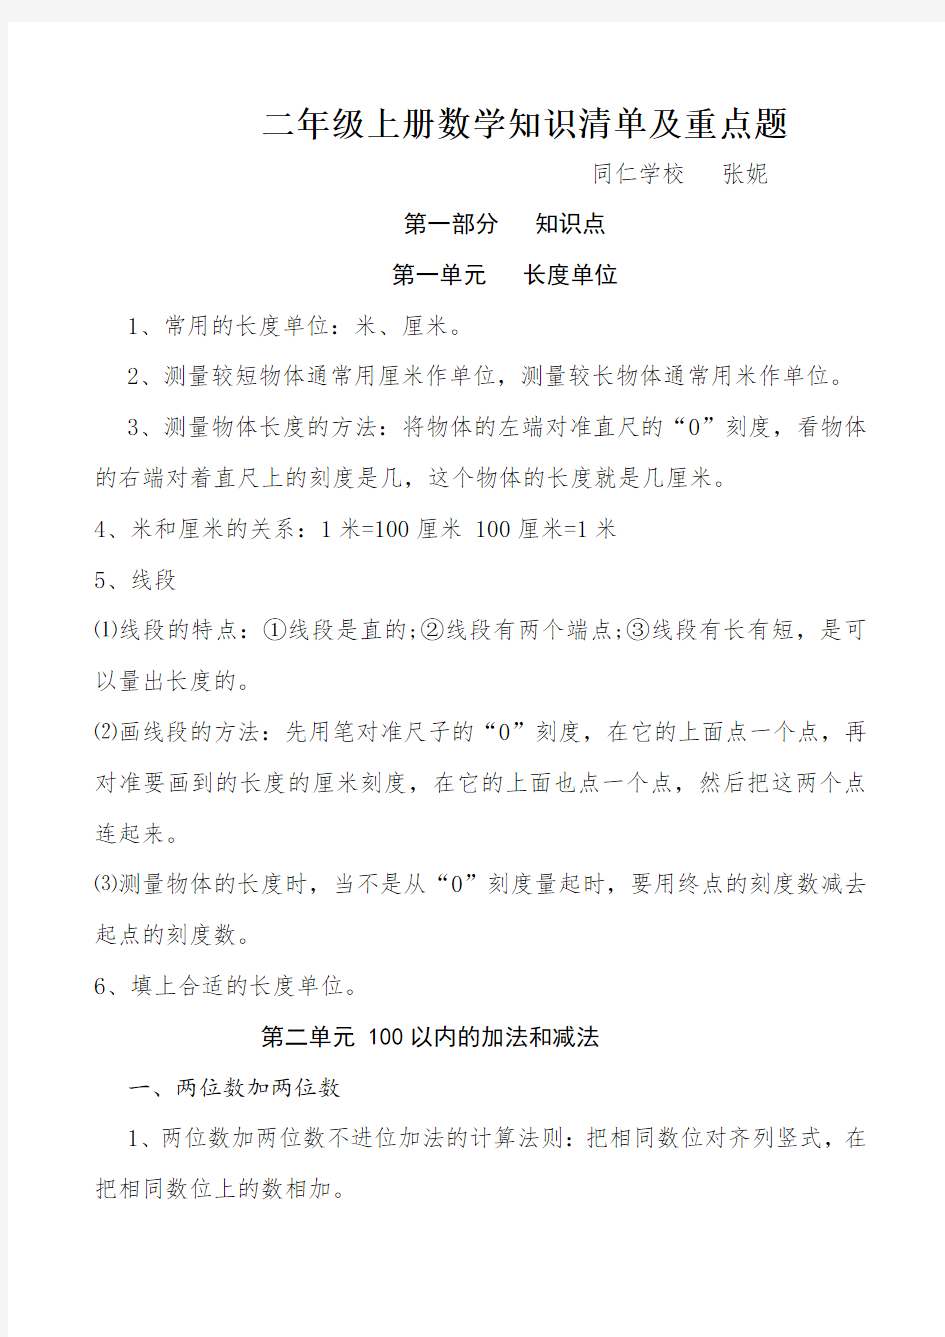 【上海市】二年级上册数学知识点及典型题